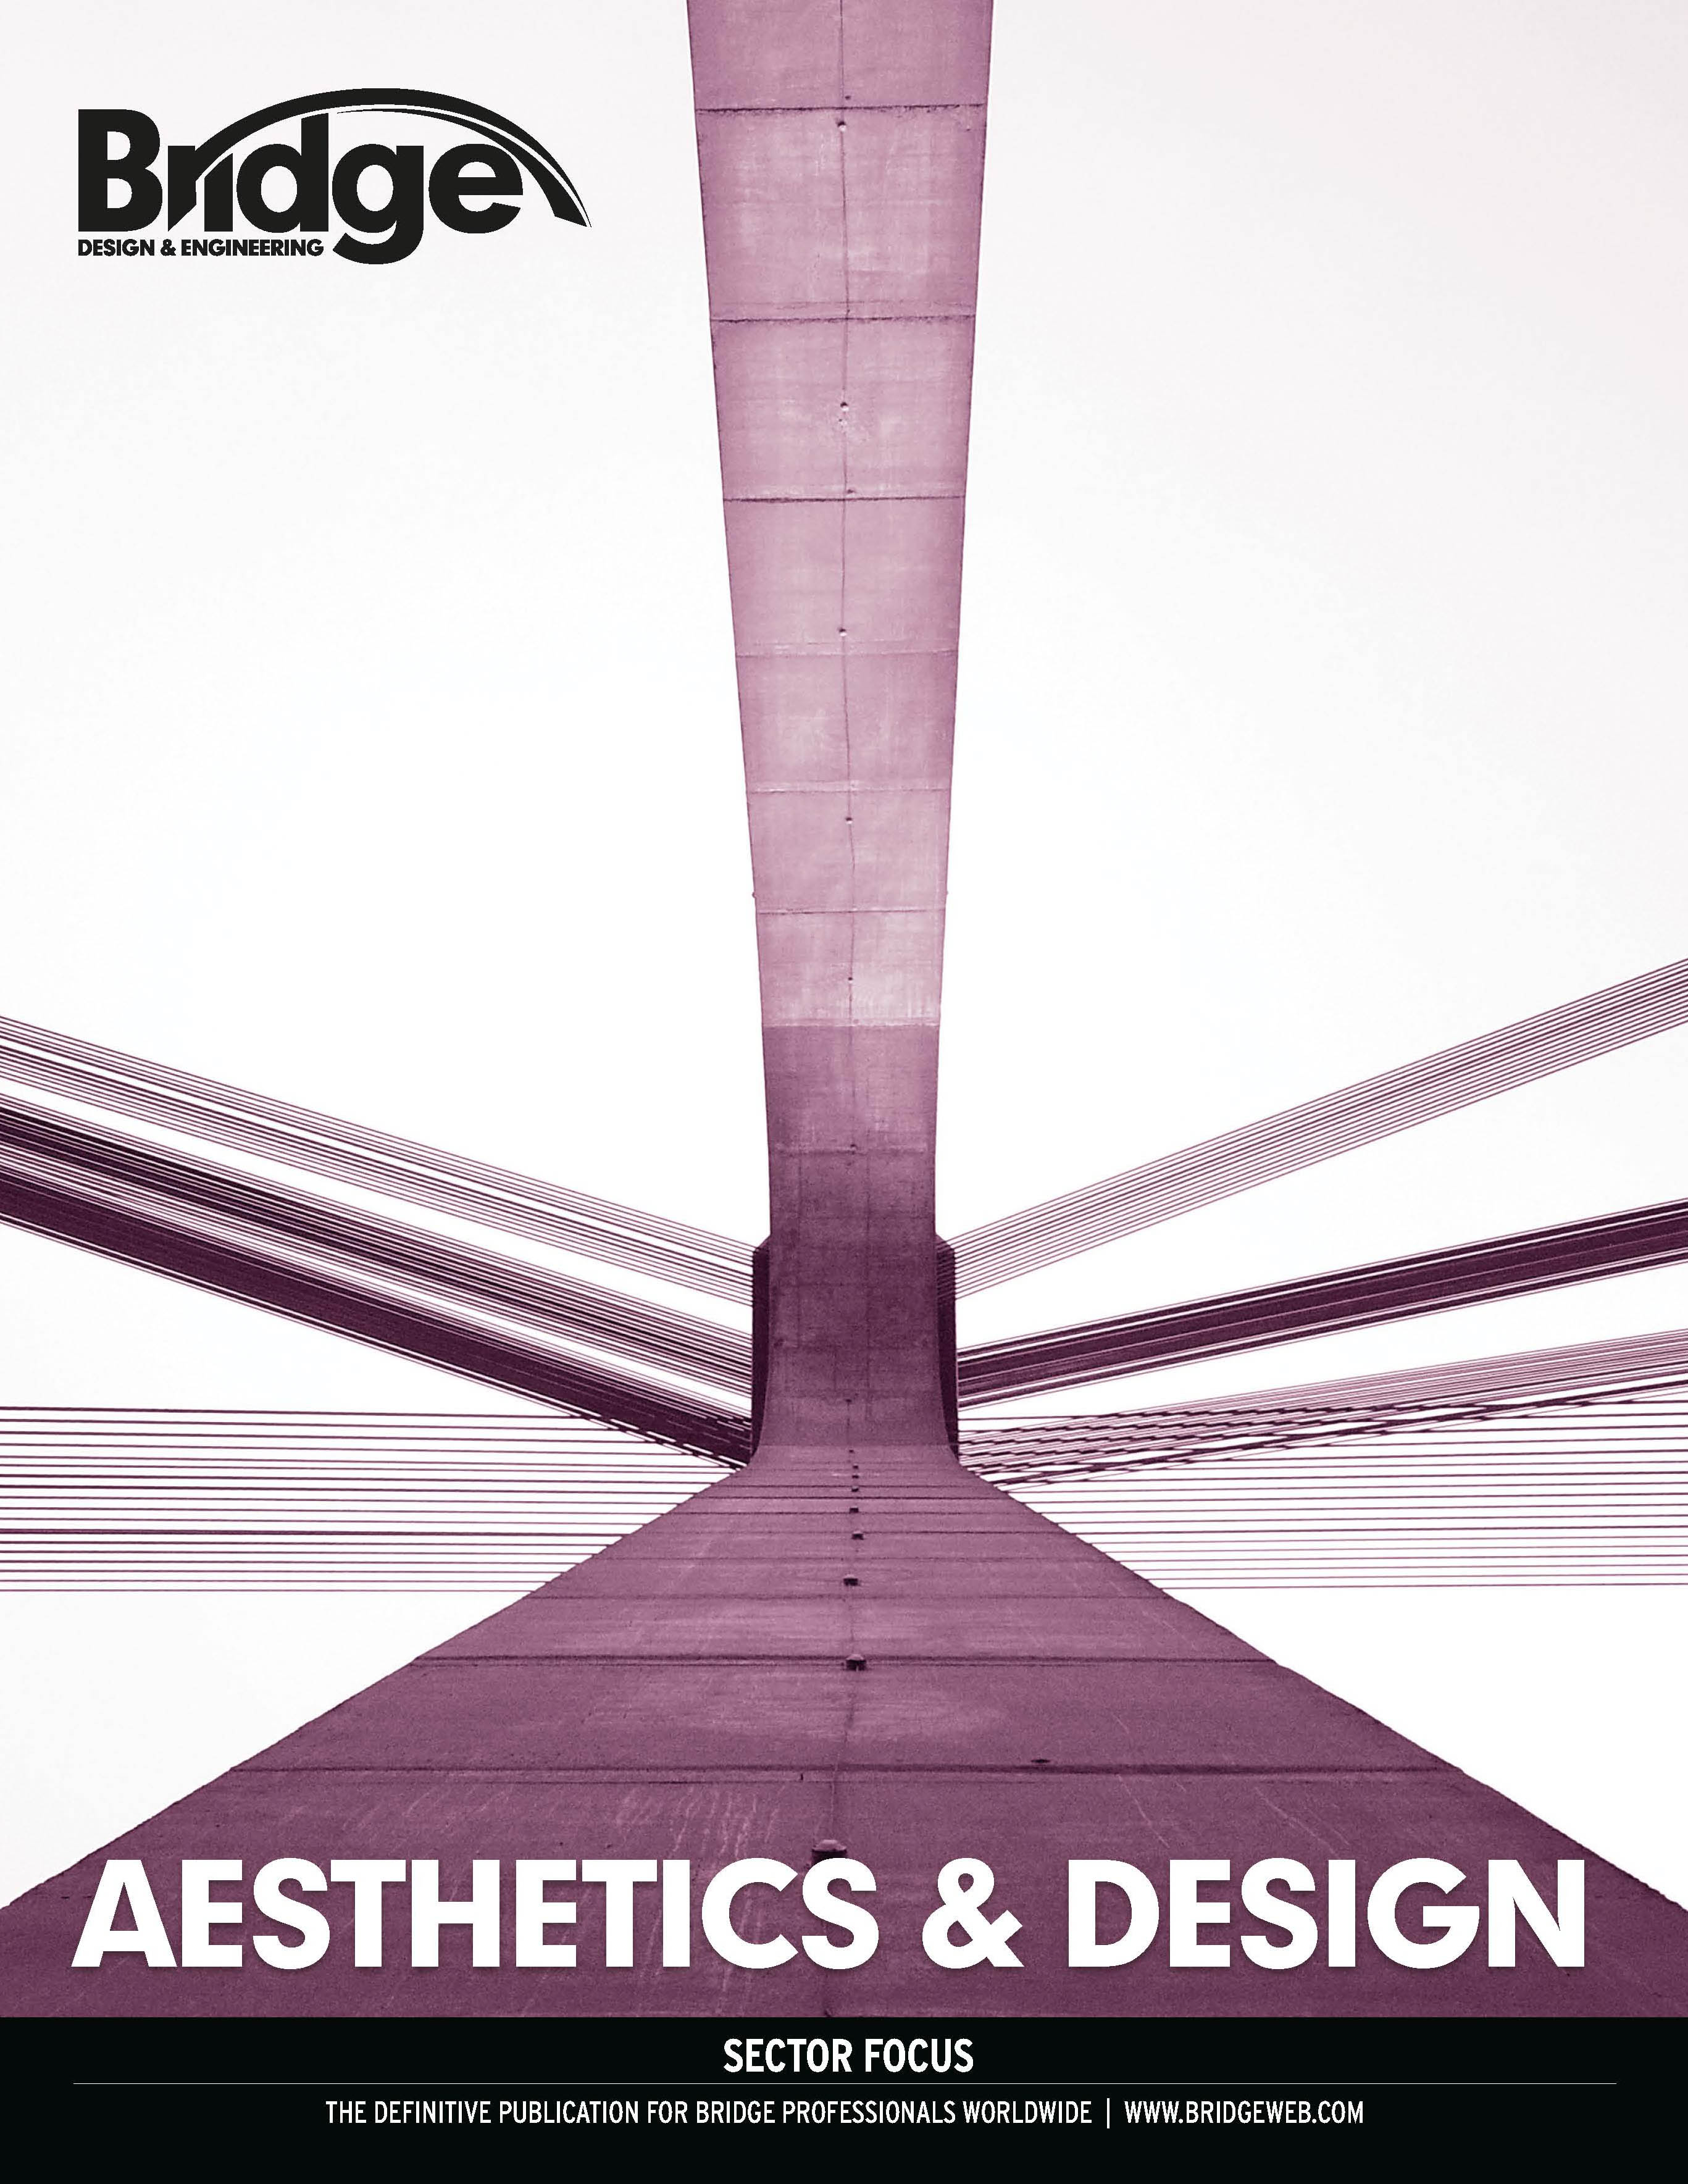 Aesthetics & design